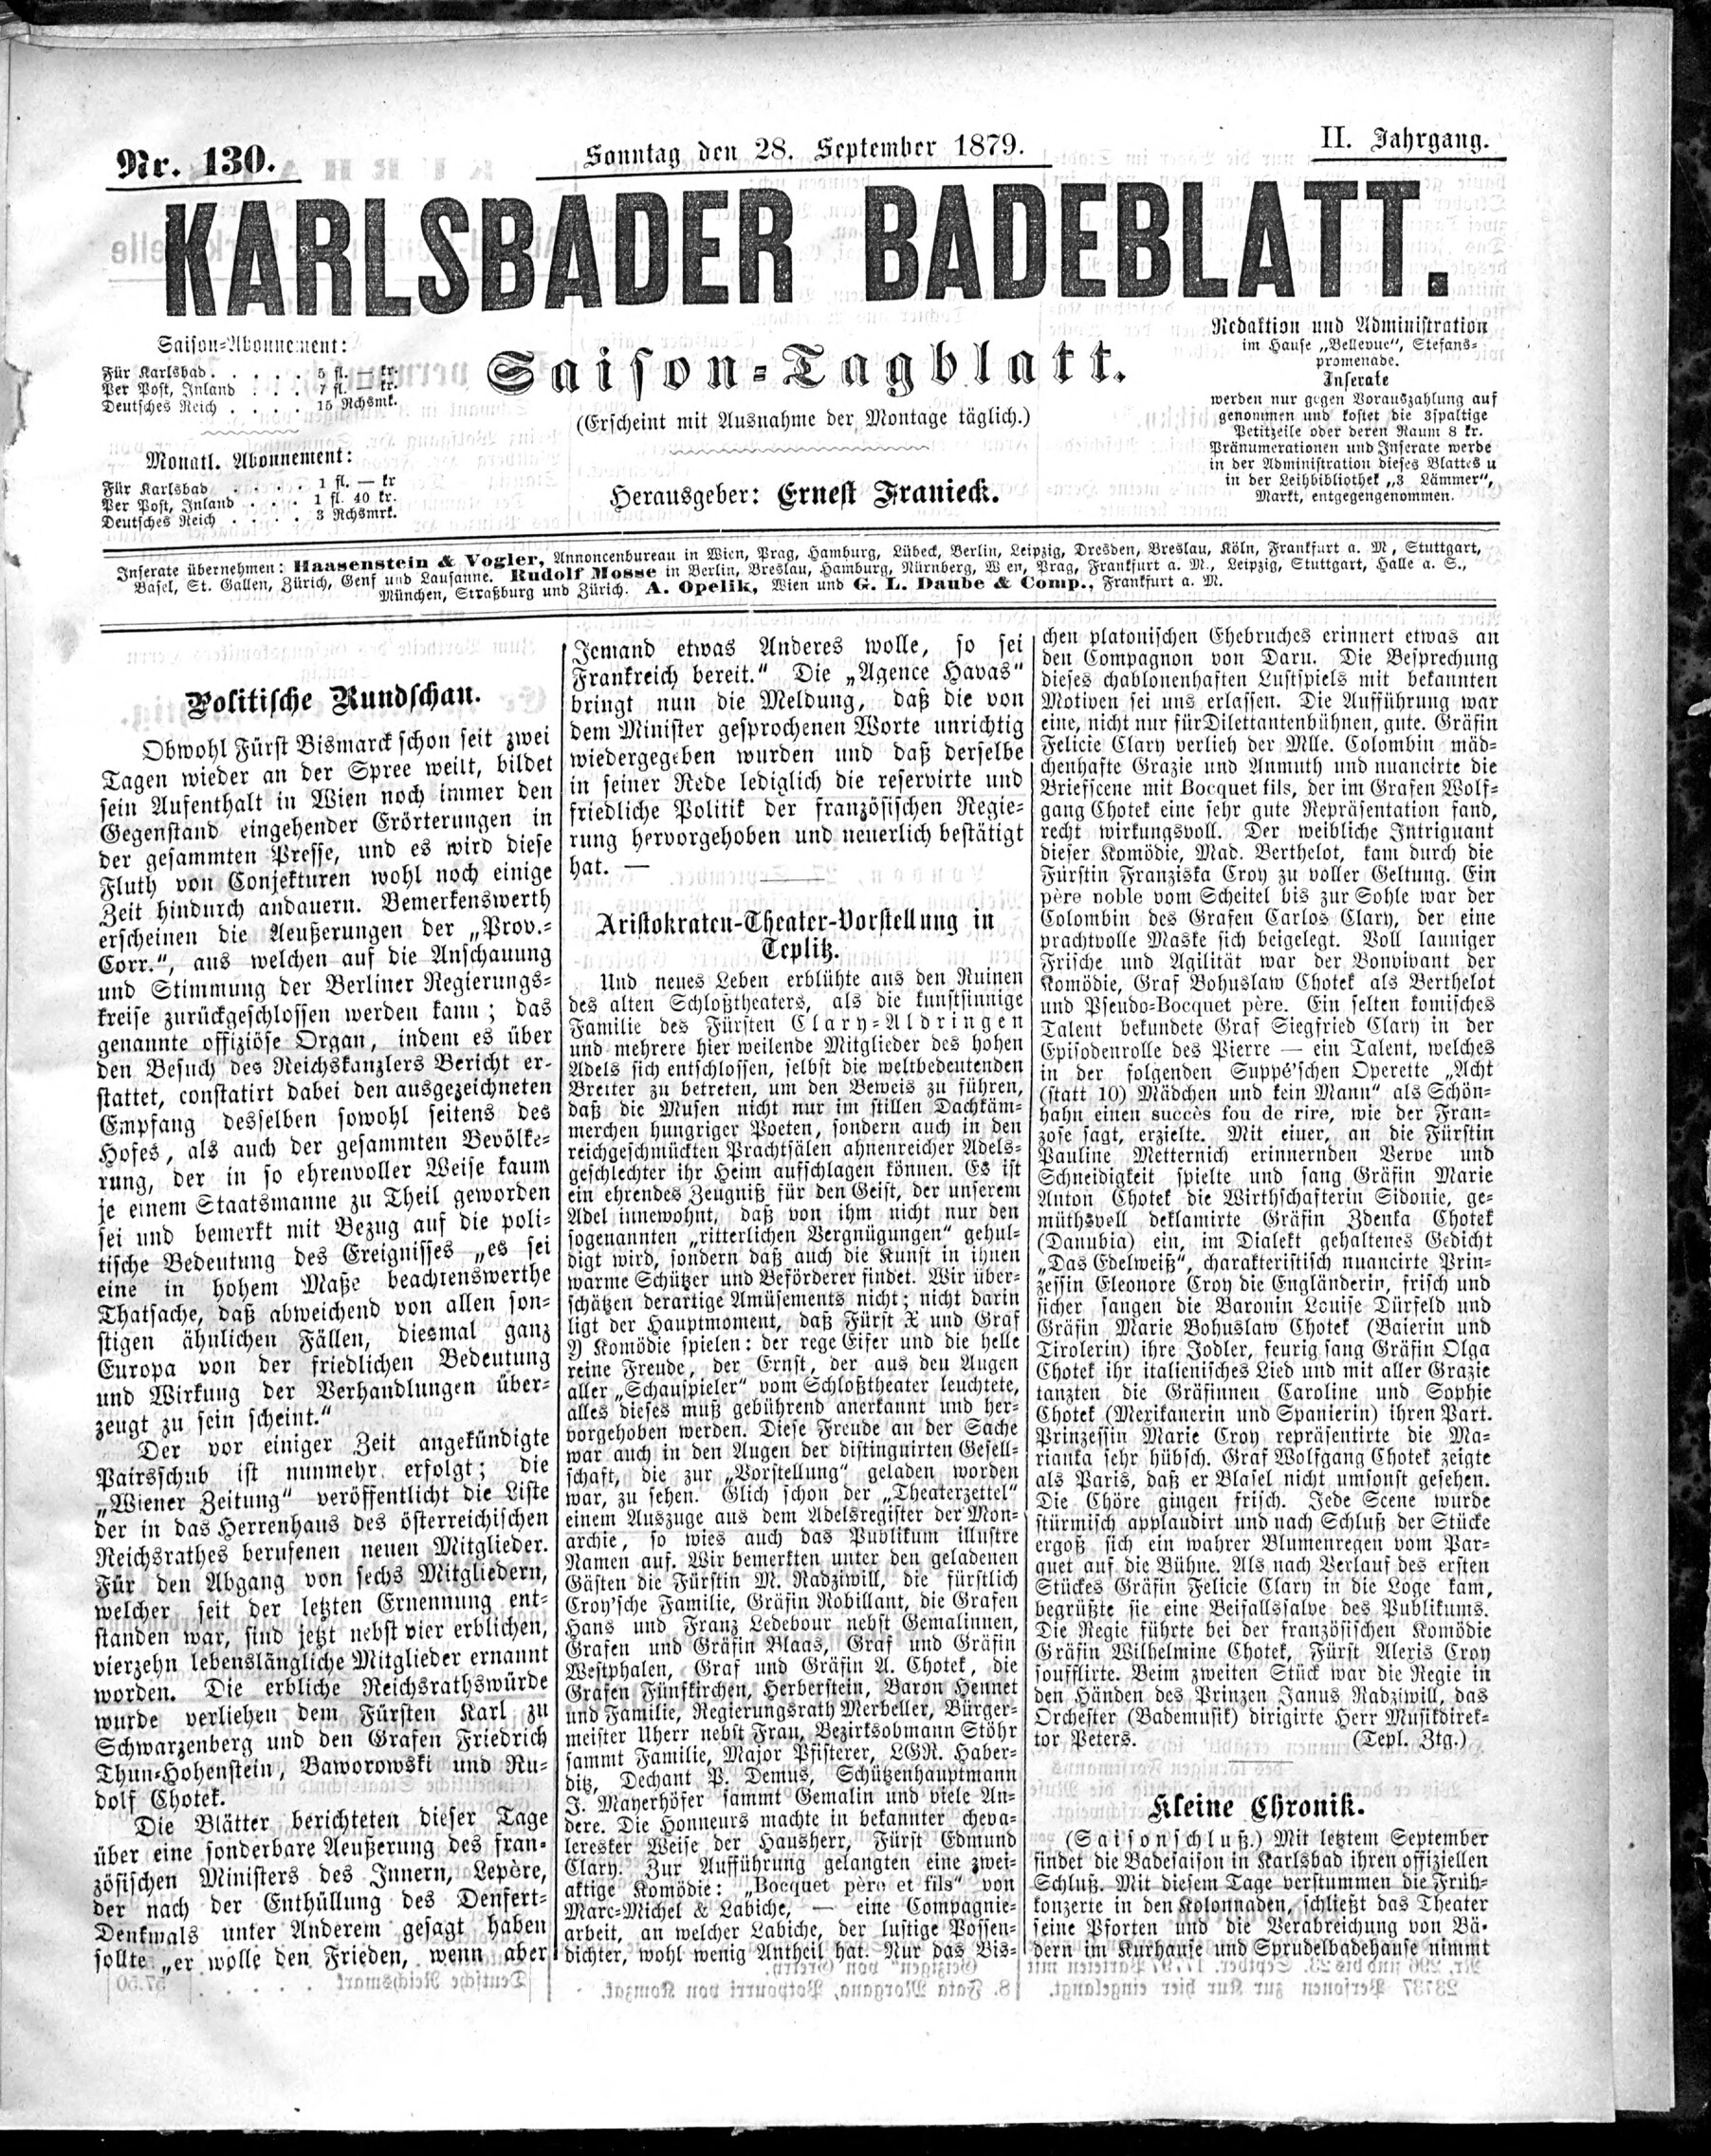 1. karlsbader-badeblatt-1879-09-28-n130_2665